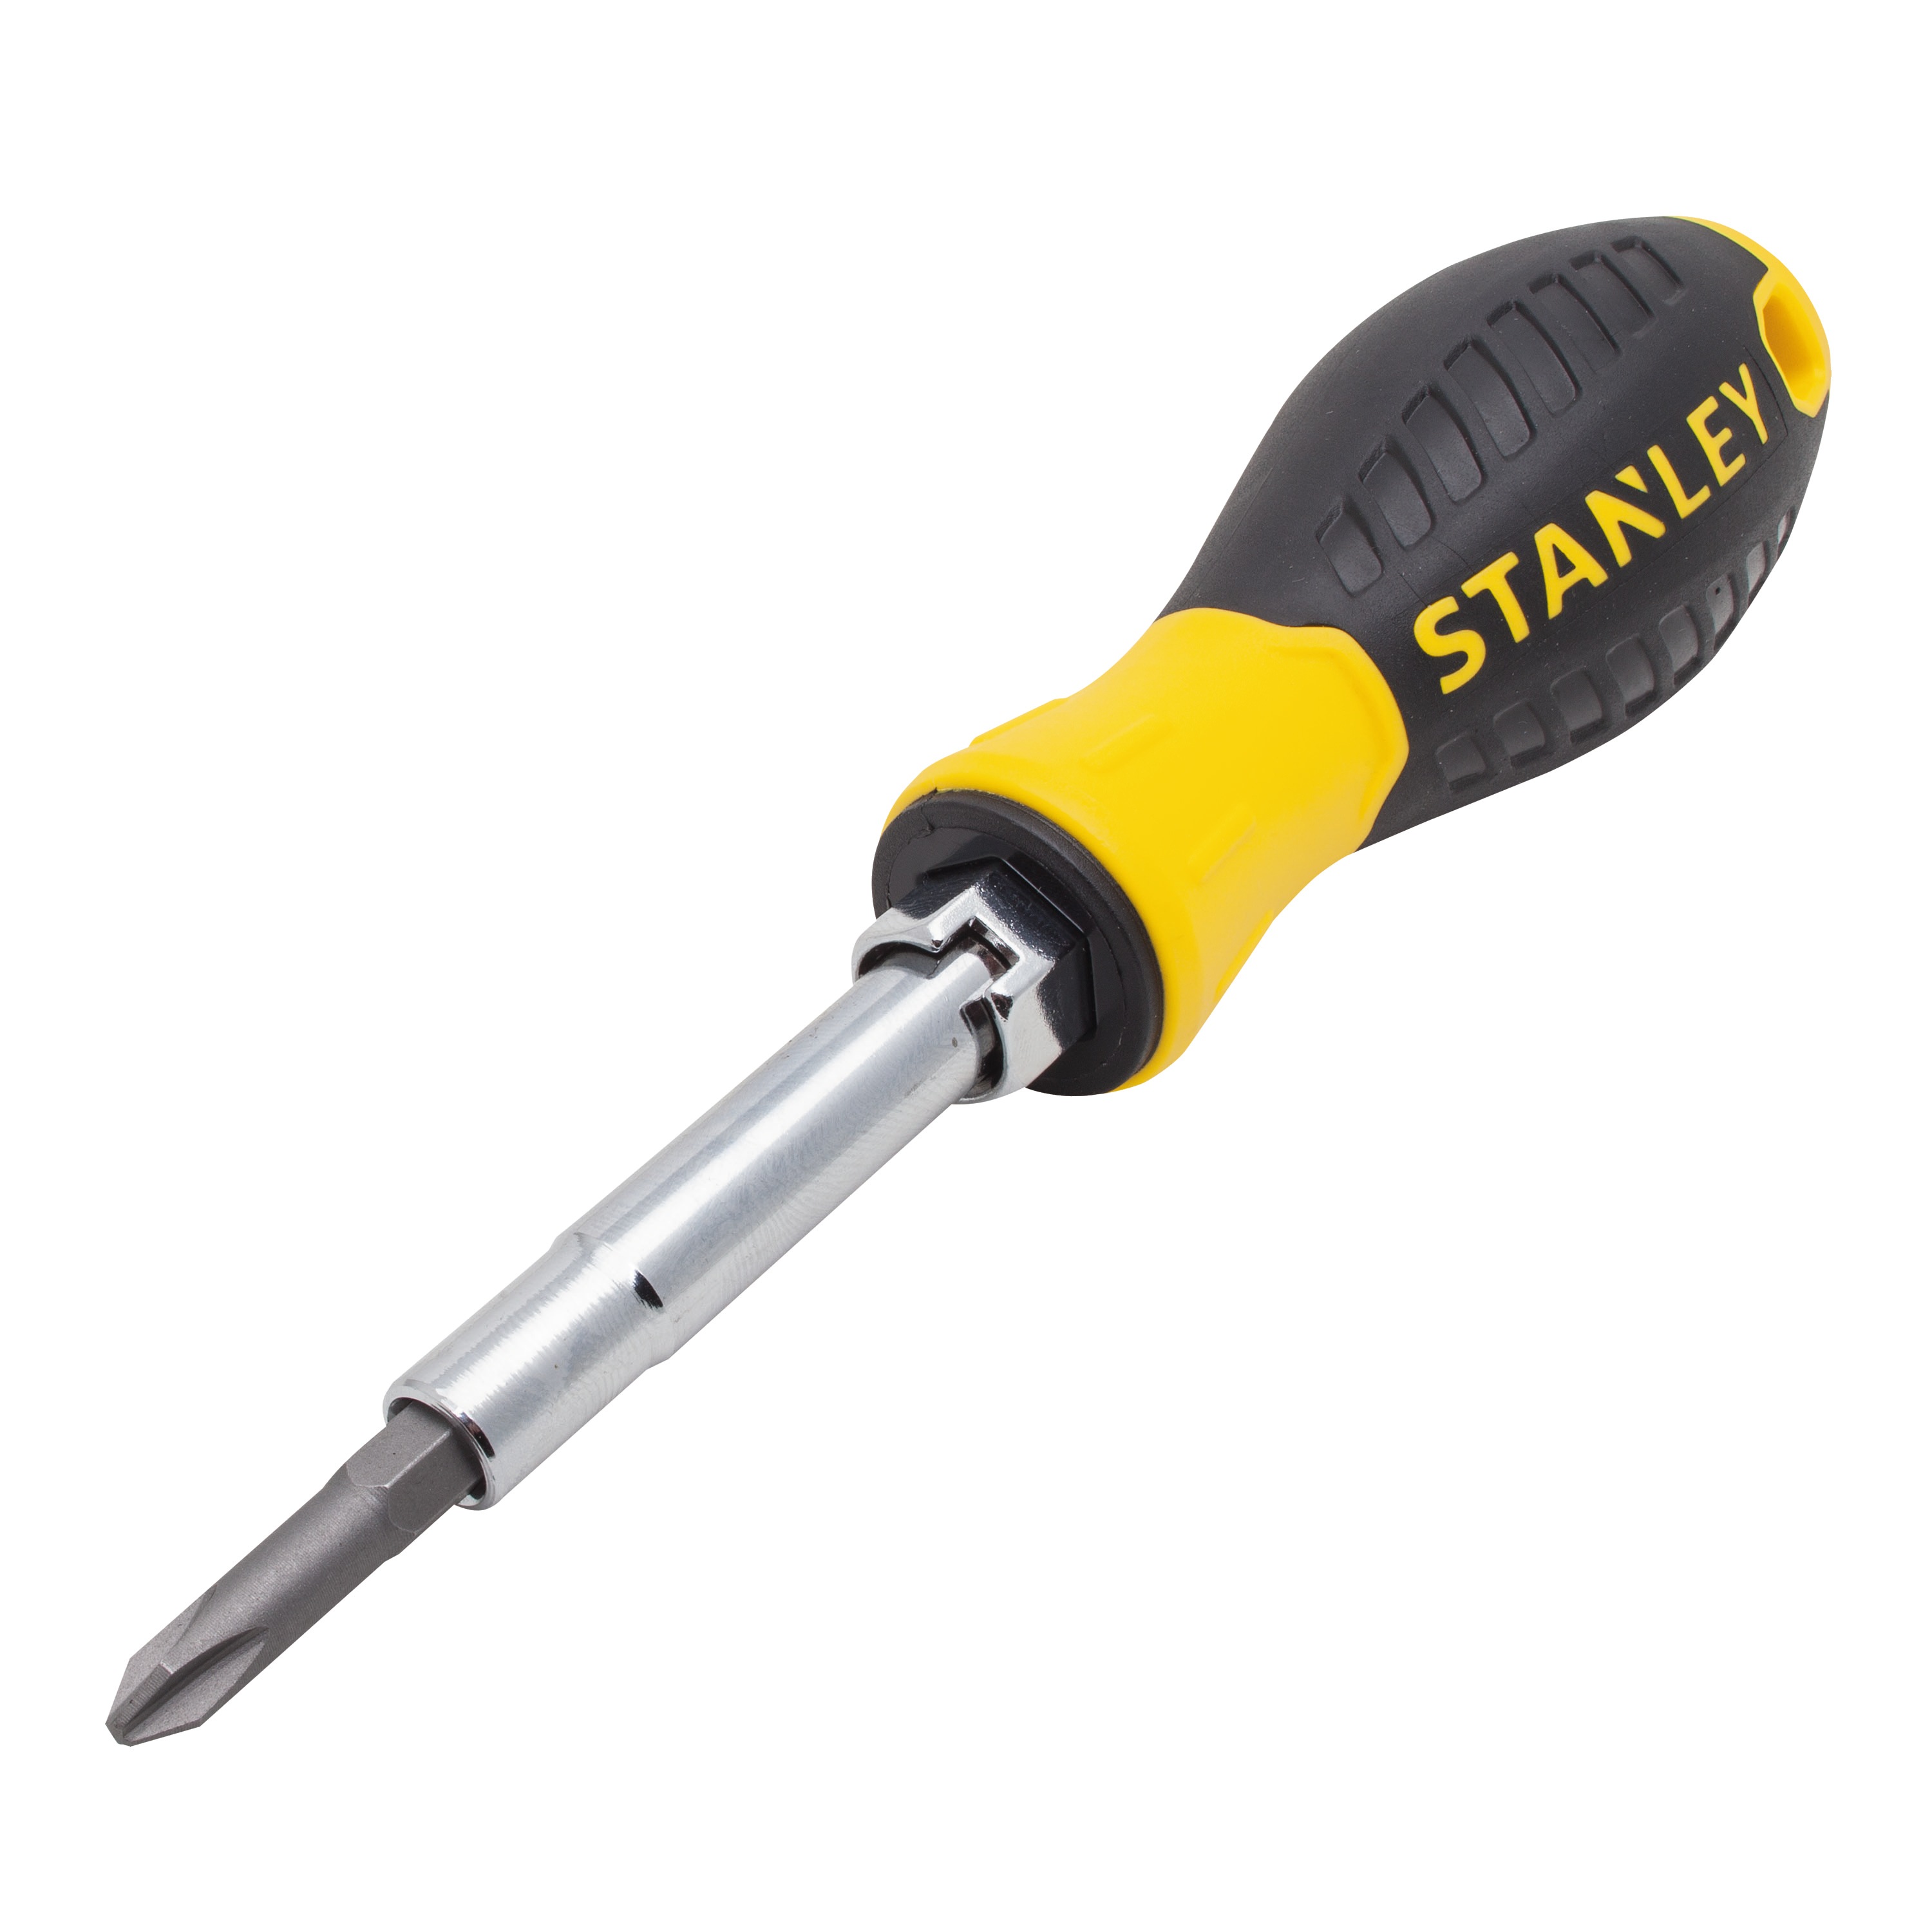 Stanley Tools - 6Way Screwdriver - 68-012